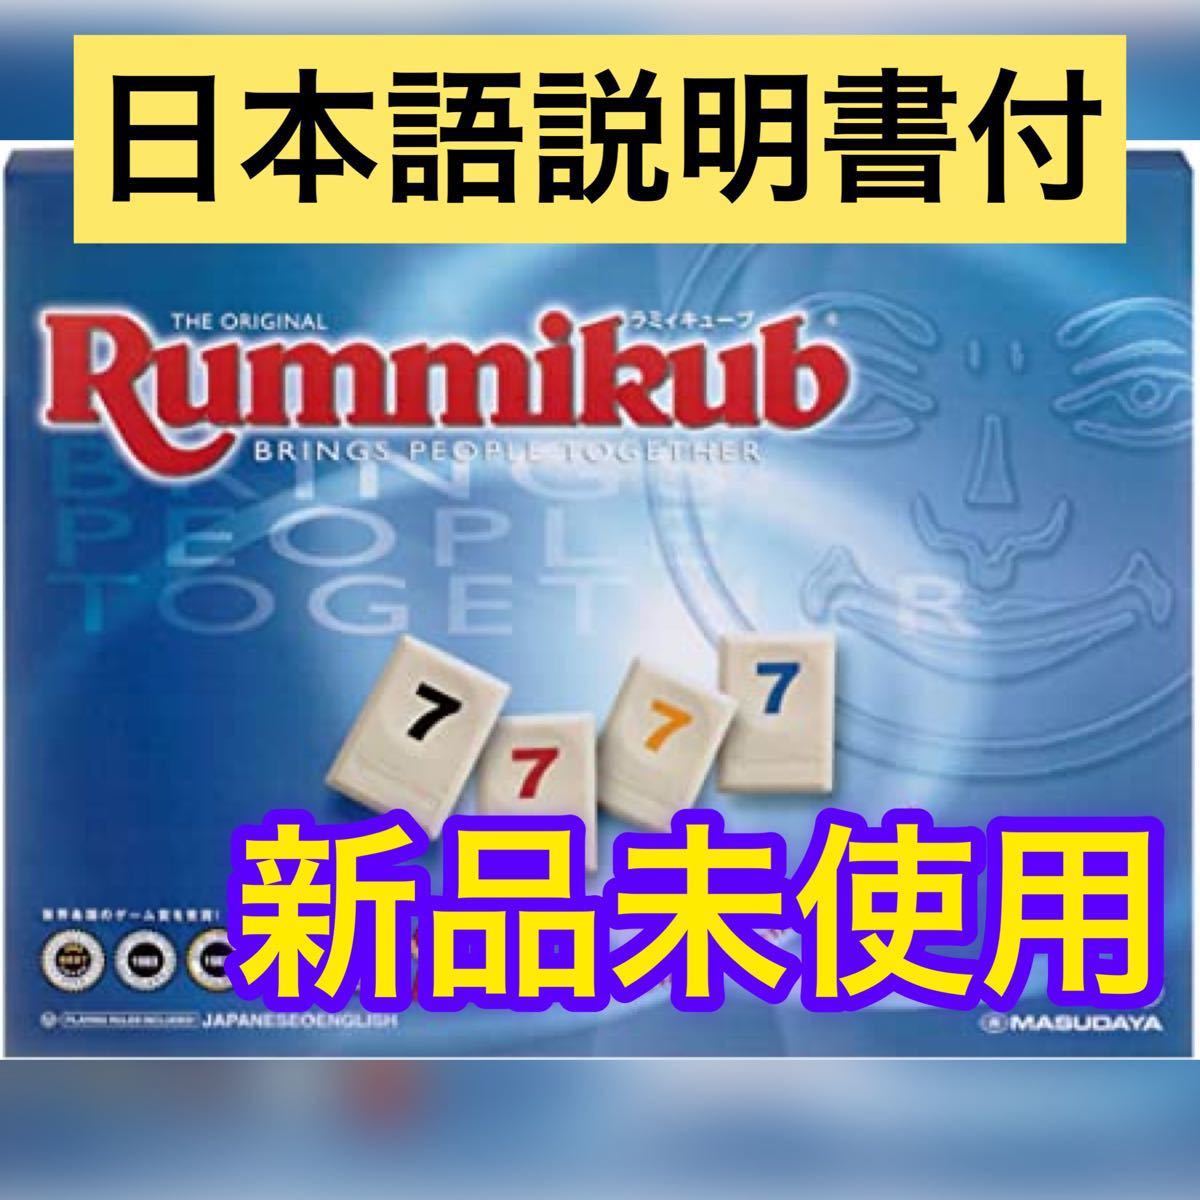 【新品未使用】ラミーキューブ(ラミィキューブ/rummikub)【日本語説明付】 ラミィキューブ 知育玩具